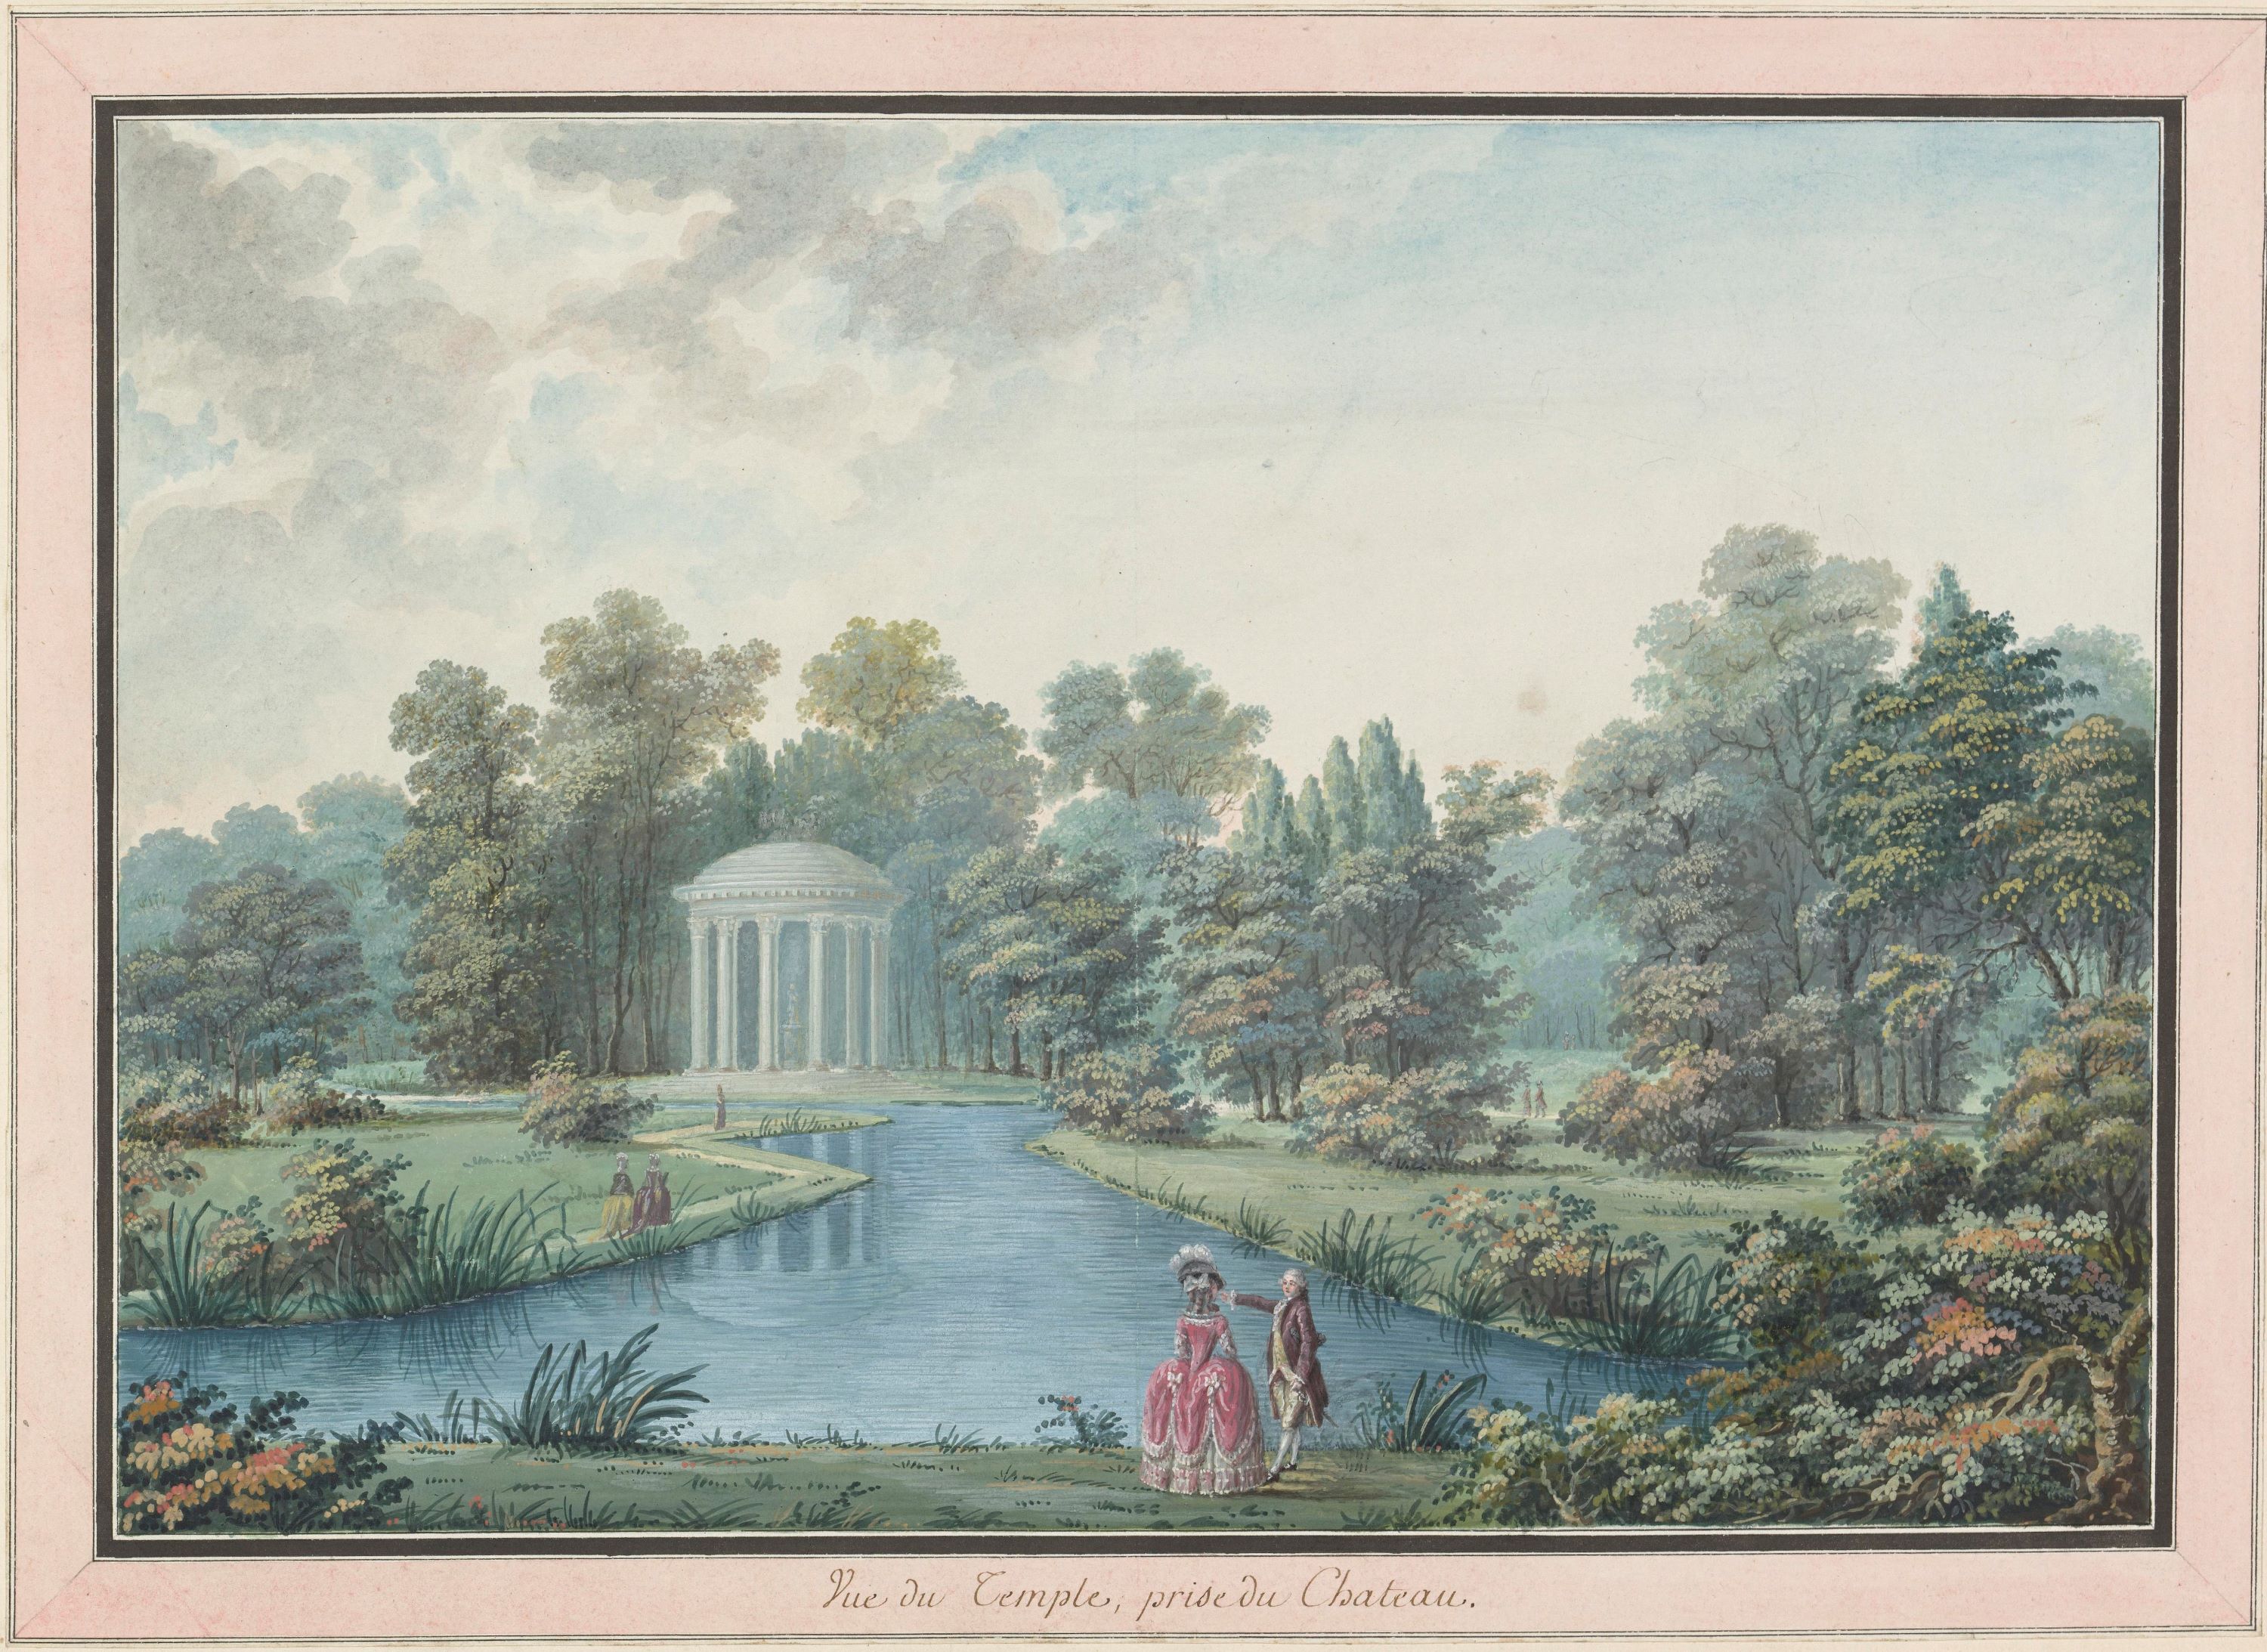 Målad bild som föreställer en park med gräsmattor, träd, buskar och gångstigar omkring ett vattendrag. I förgrunden står ett par i 1700-talskläder och peruker, längre bort syns ett runt tempel med höga pelare.